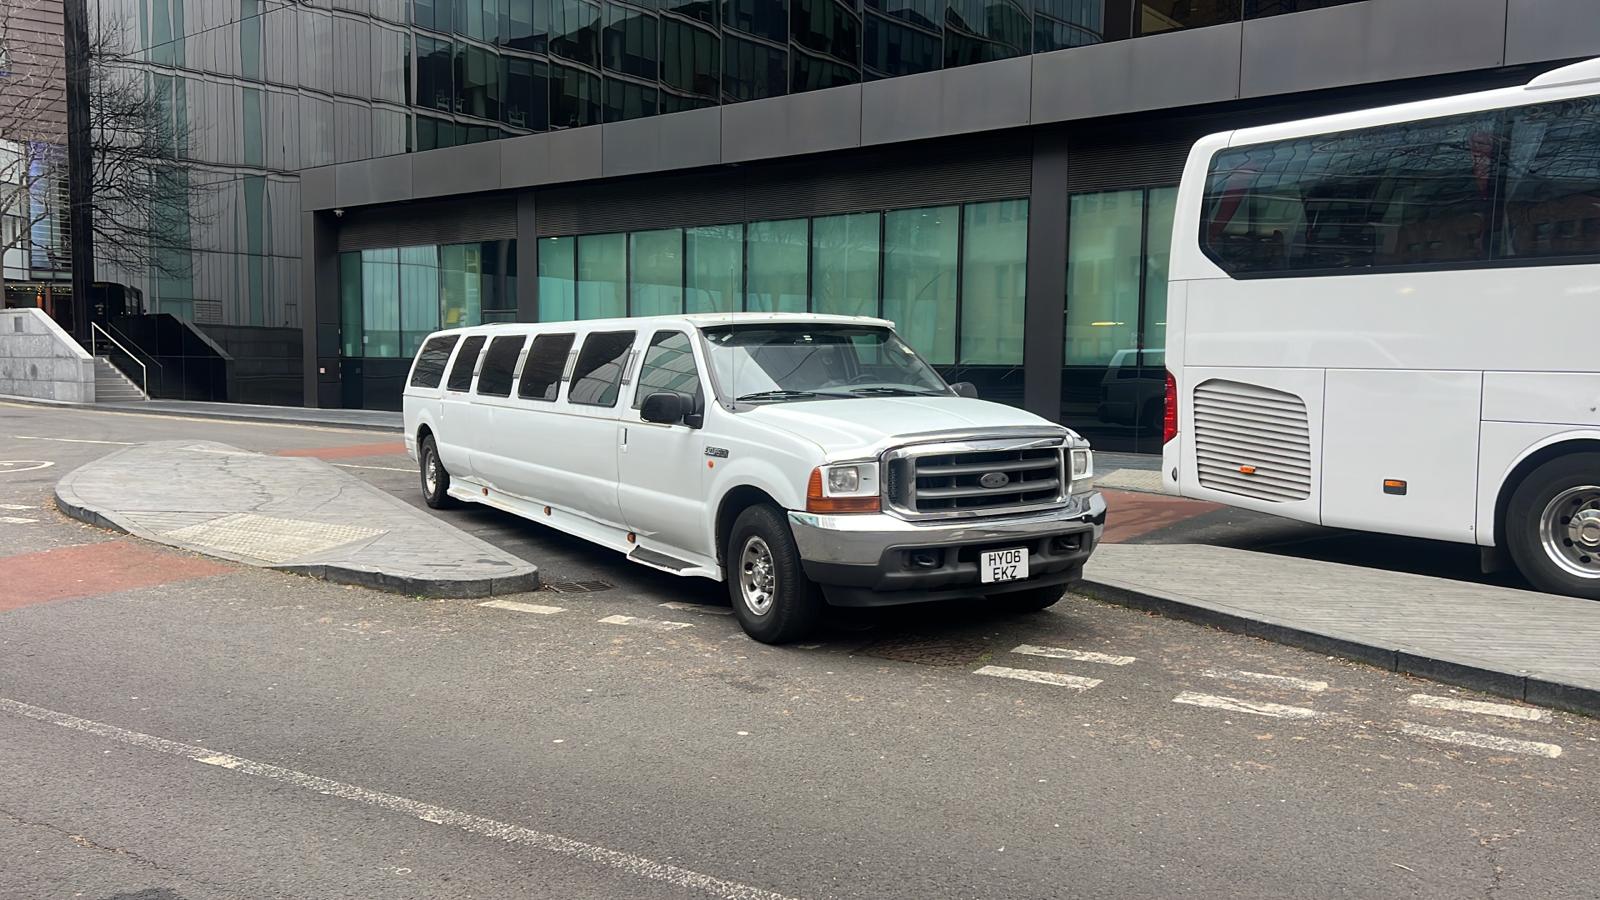 limousine for hire london